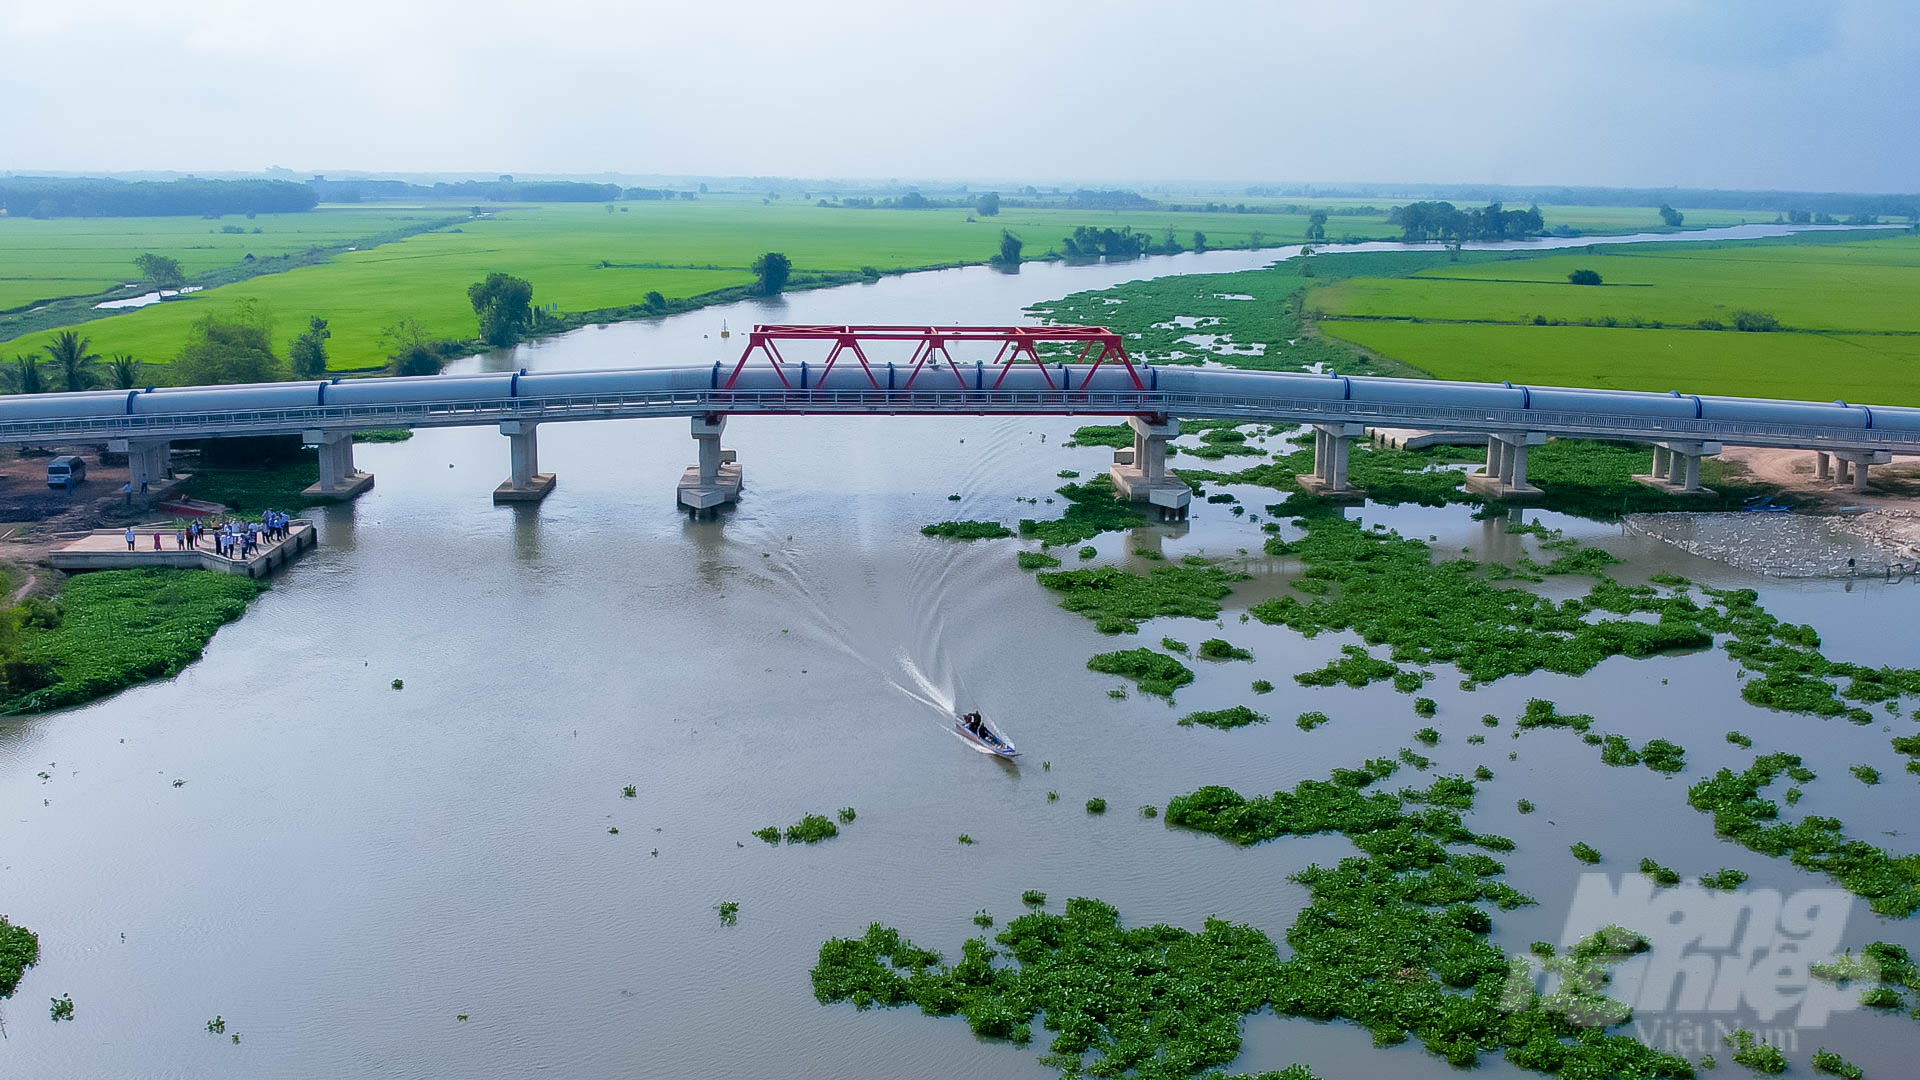 Hệ thống kênh tưới tiêu khu vực phía Tây sông Vàm Cỏ Đông giai đoạn 1 chính thức đi vào hoạt động, mở ra nhiều triển vọng cho huyện Bến Cầu. Ảnh: Lê Bình.